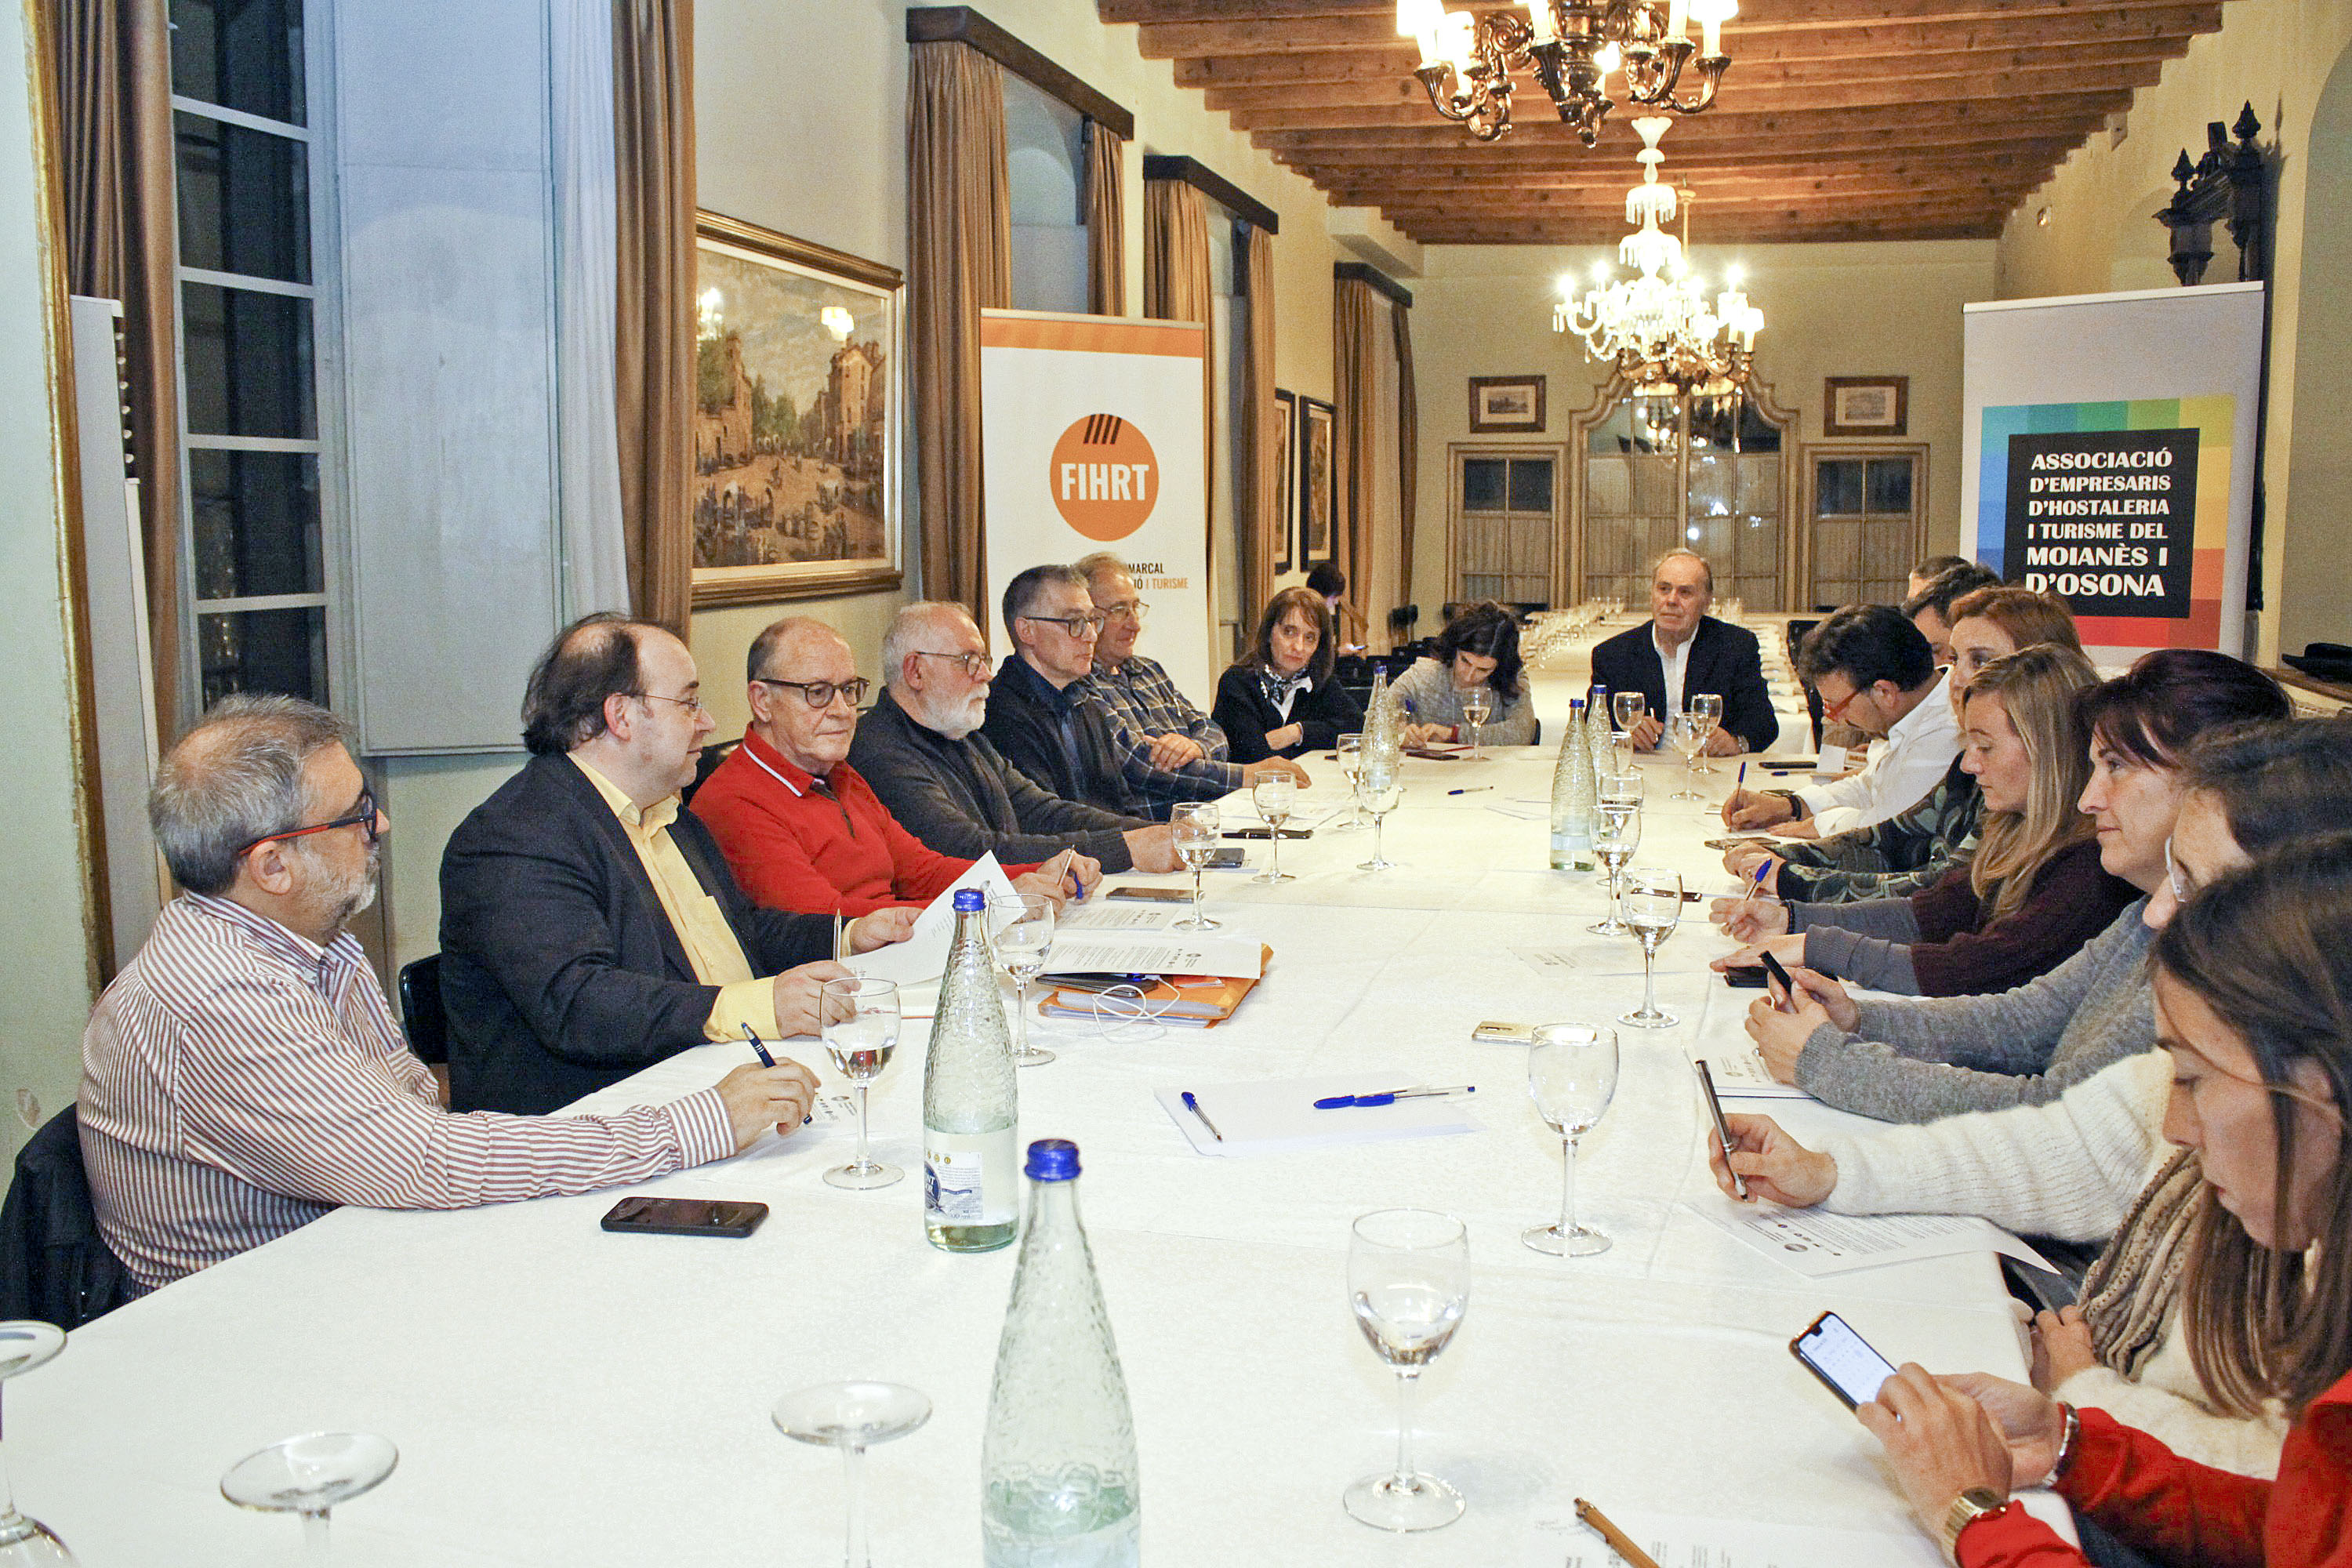 L’assemblea de la FIHRT va tenir lloc al Restaurant Ca l’U; Daniel Brasé i Pere Santos, segon i tercer per l’esquerra